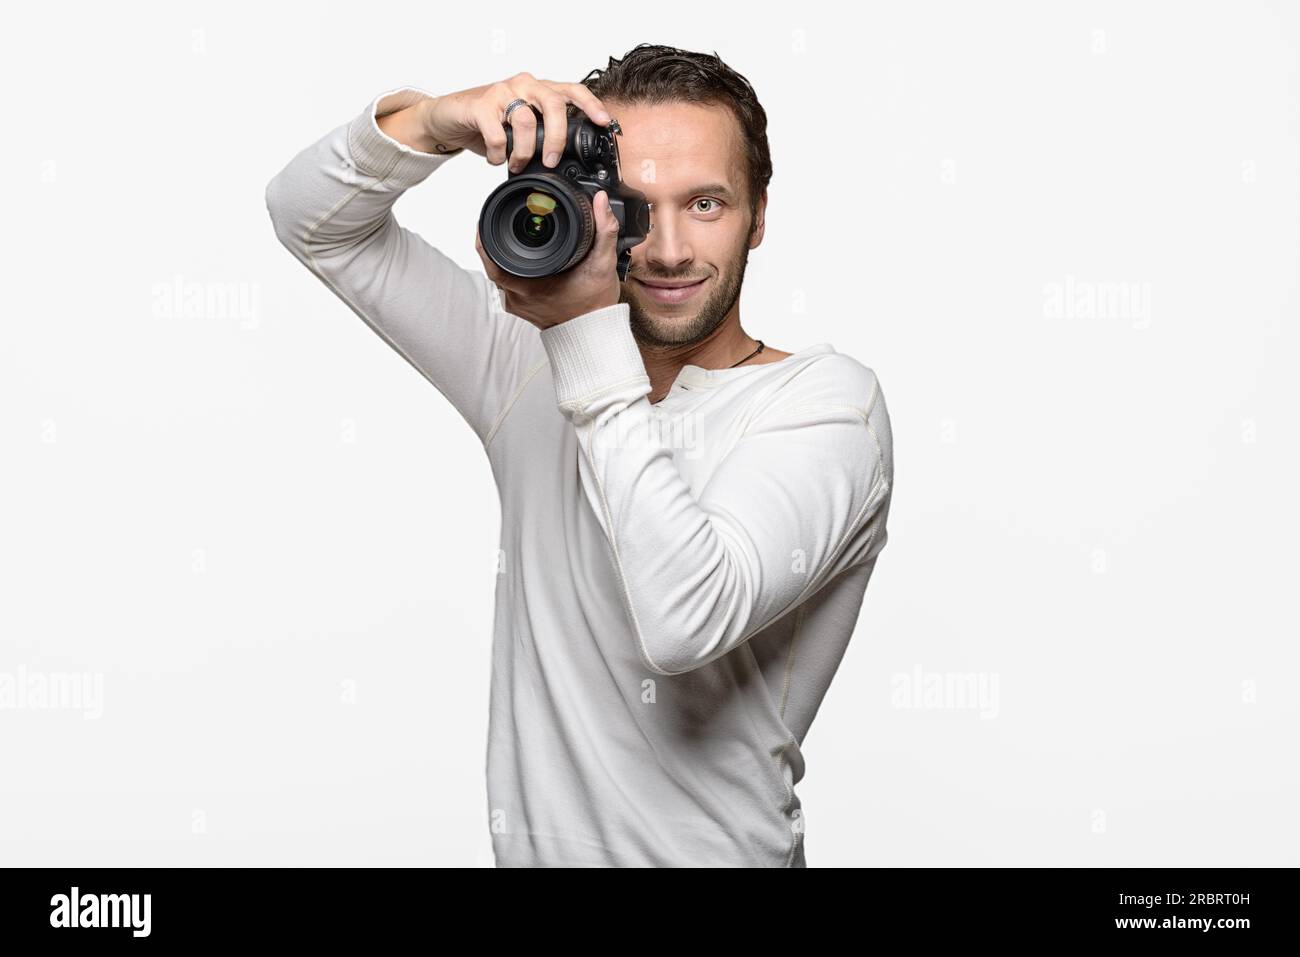 Männlicher Fotograf fokussiert und erstellt ein Bild mit seiner professionellen digitalen DSLR-Kamera, die das Objektiv direkt auf den Betrachter, den Oberkörper richtet Stockfoto